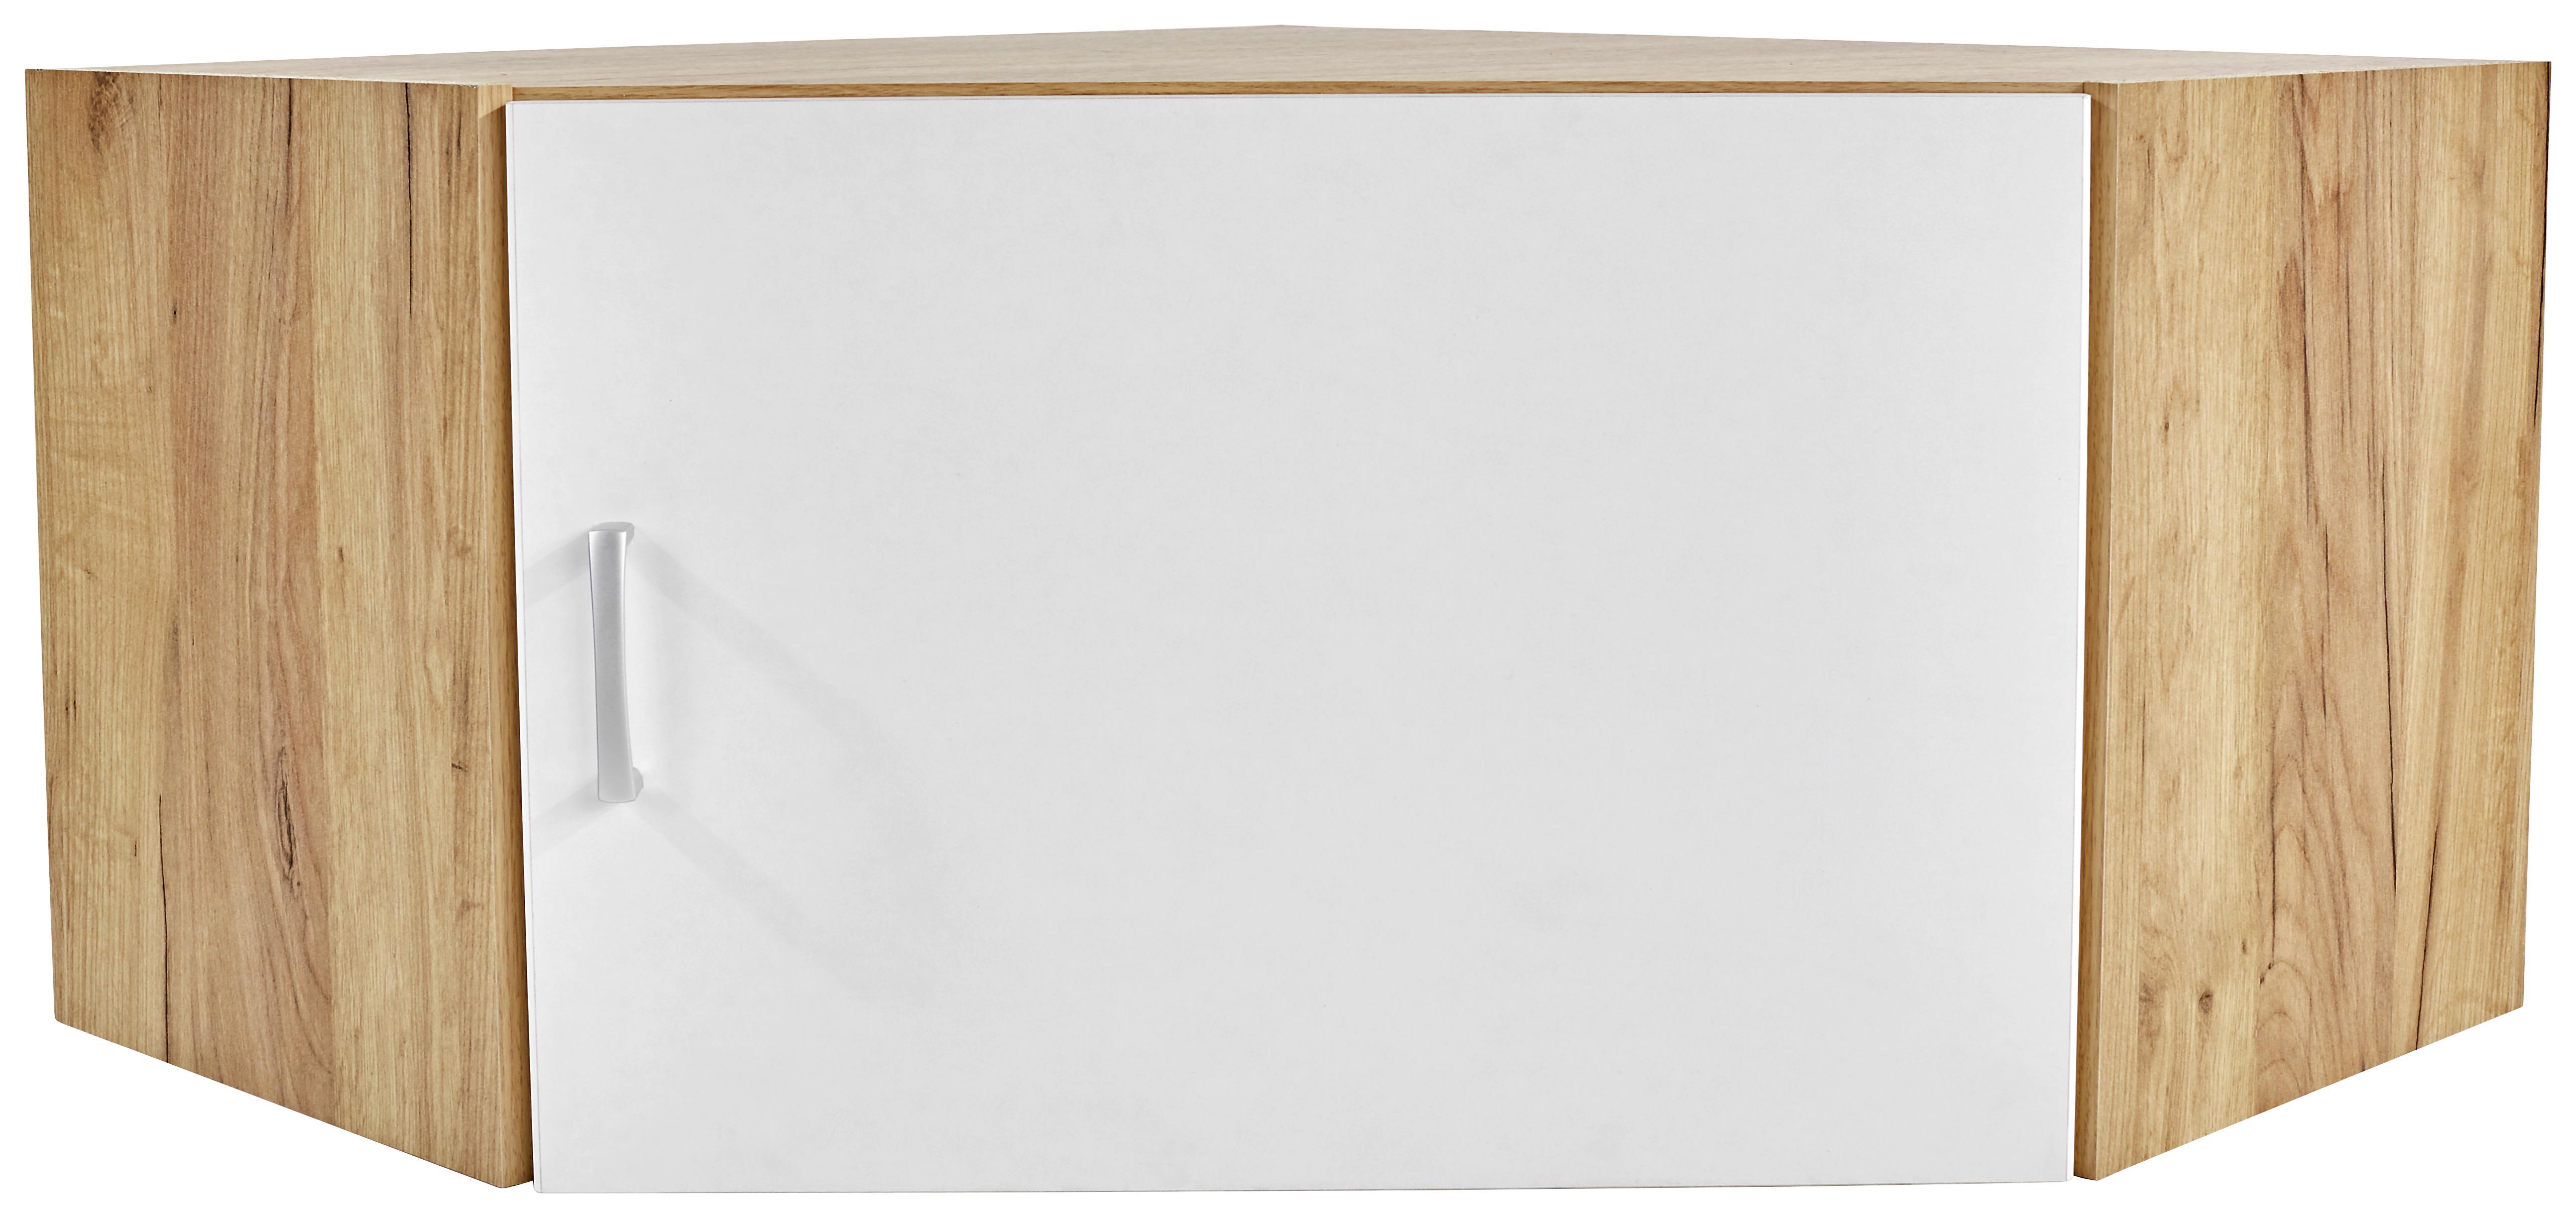 Nástavec Na Skříň Tio - bílá/barvy dubu, Konvenční, kompozitní dřevo (80/80cm)